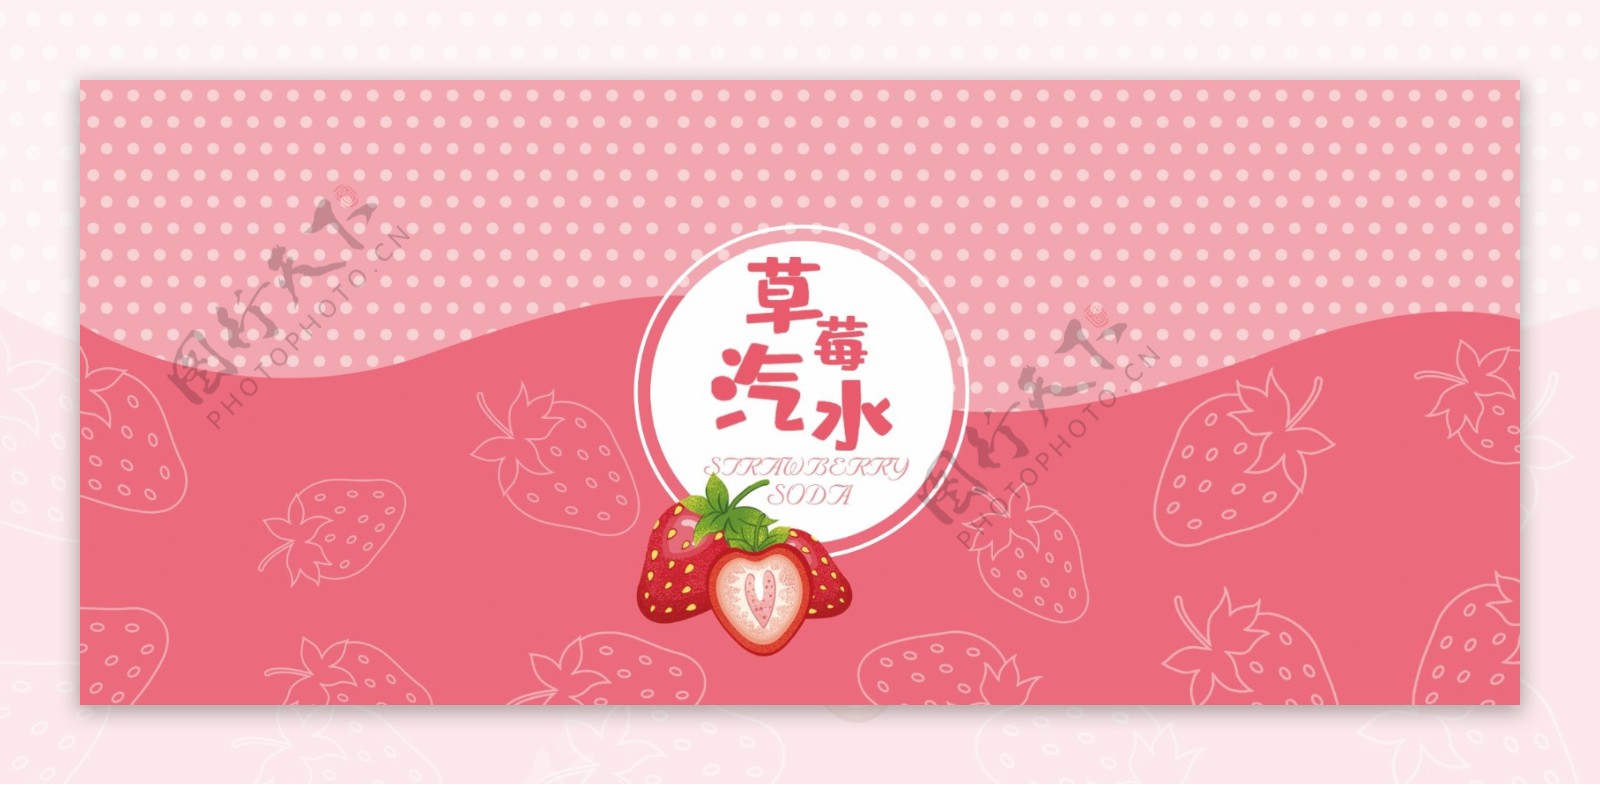 原创易拉罐包装七色水果味草莓汽水包装插画